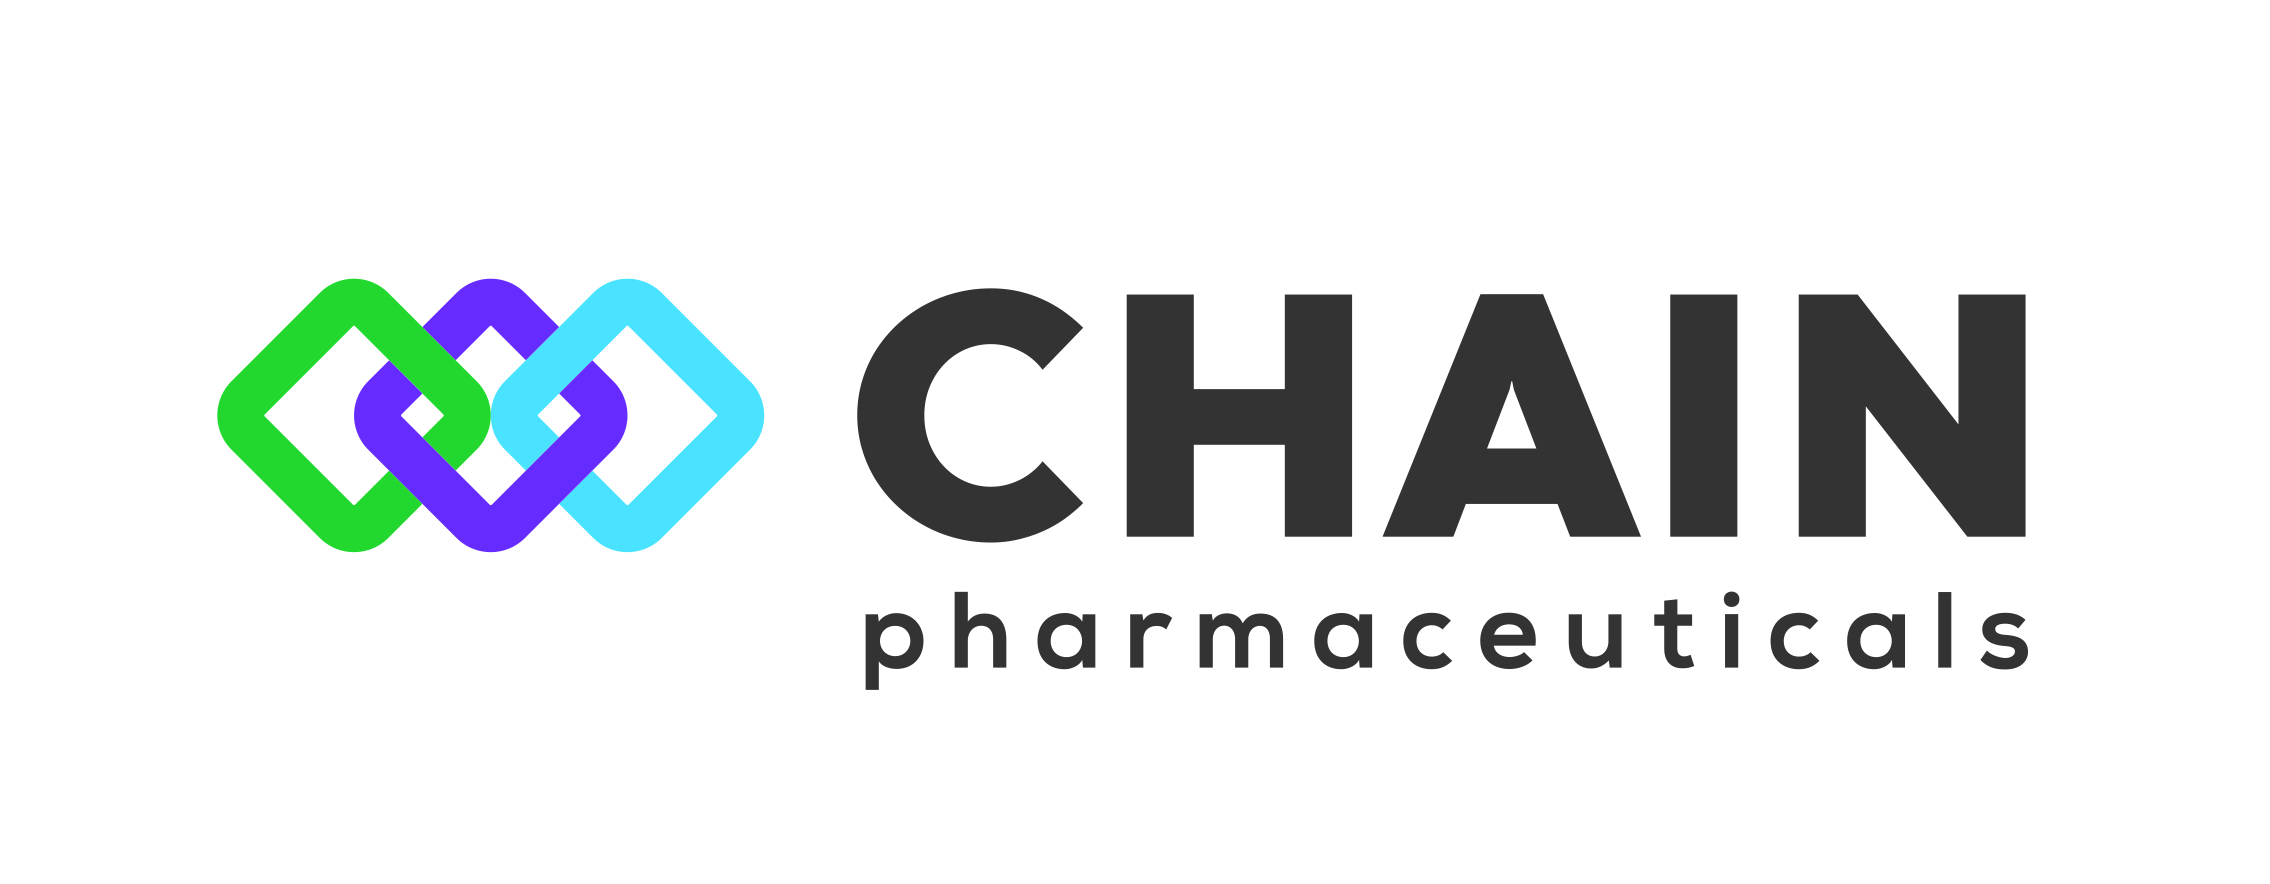 Logo Chain Pharmaceuticals CMYK.jpg